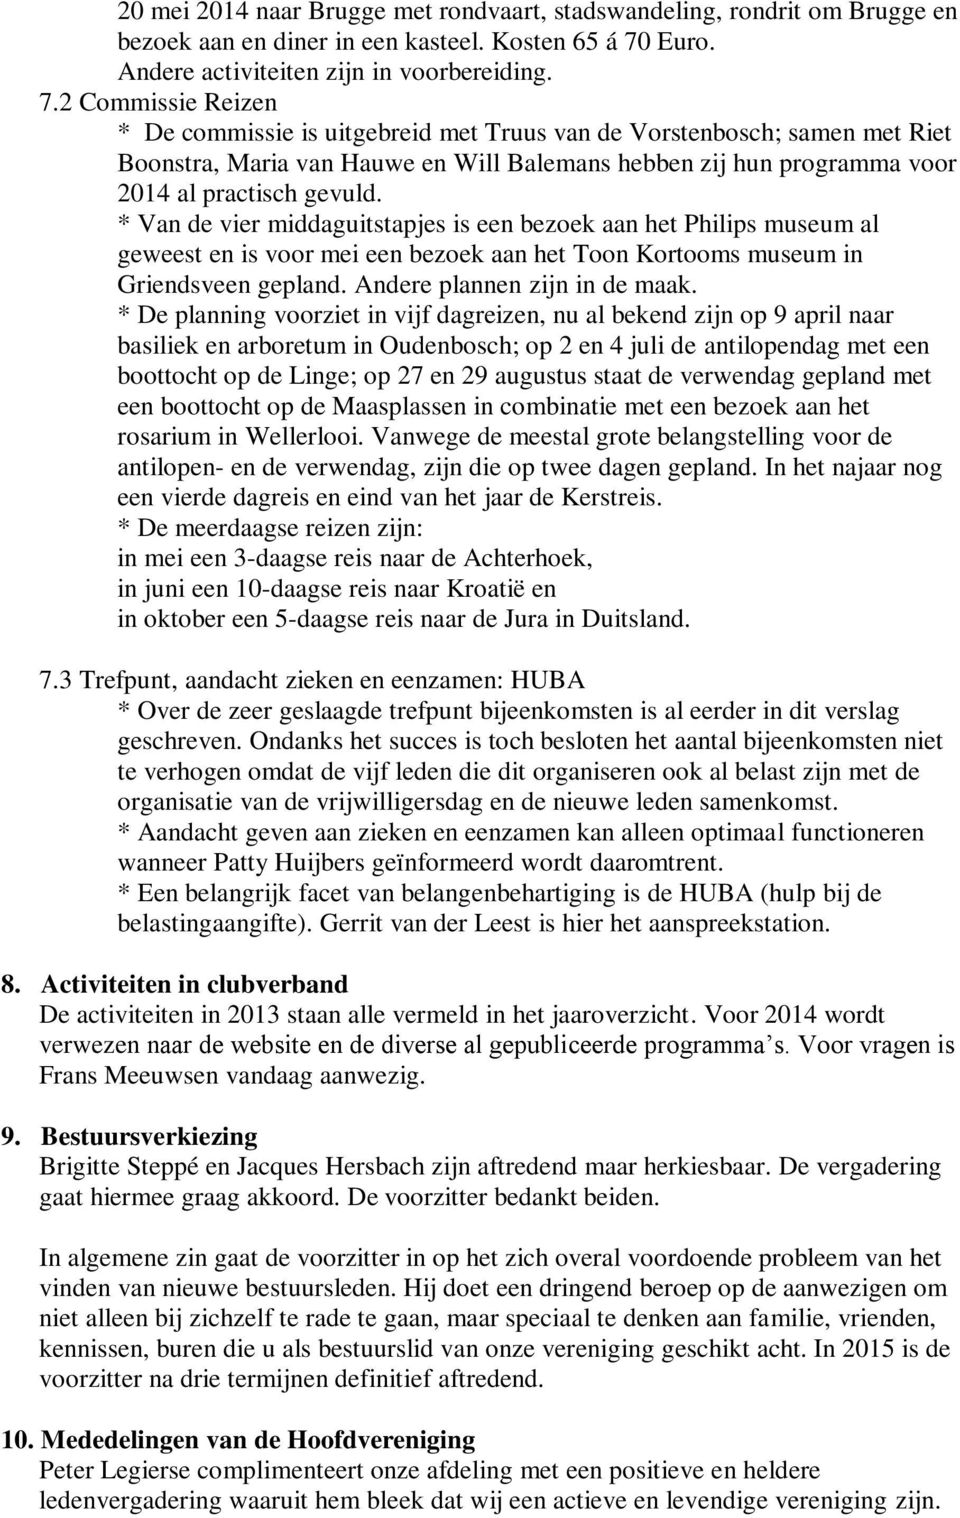 2 Commissie Reizen * De commissie is uitgebreid met Truus van de Vorstenbosch; samen met Riet Boonstra, Maria van Hauwe en Will Balemans hebben zij hun programma voor 2014 al practisch gevuld.